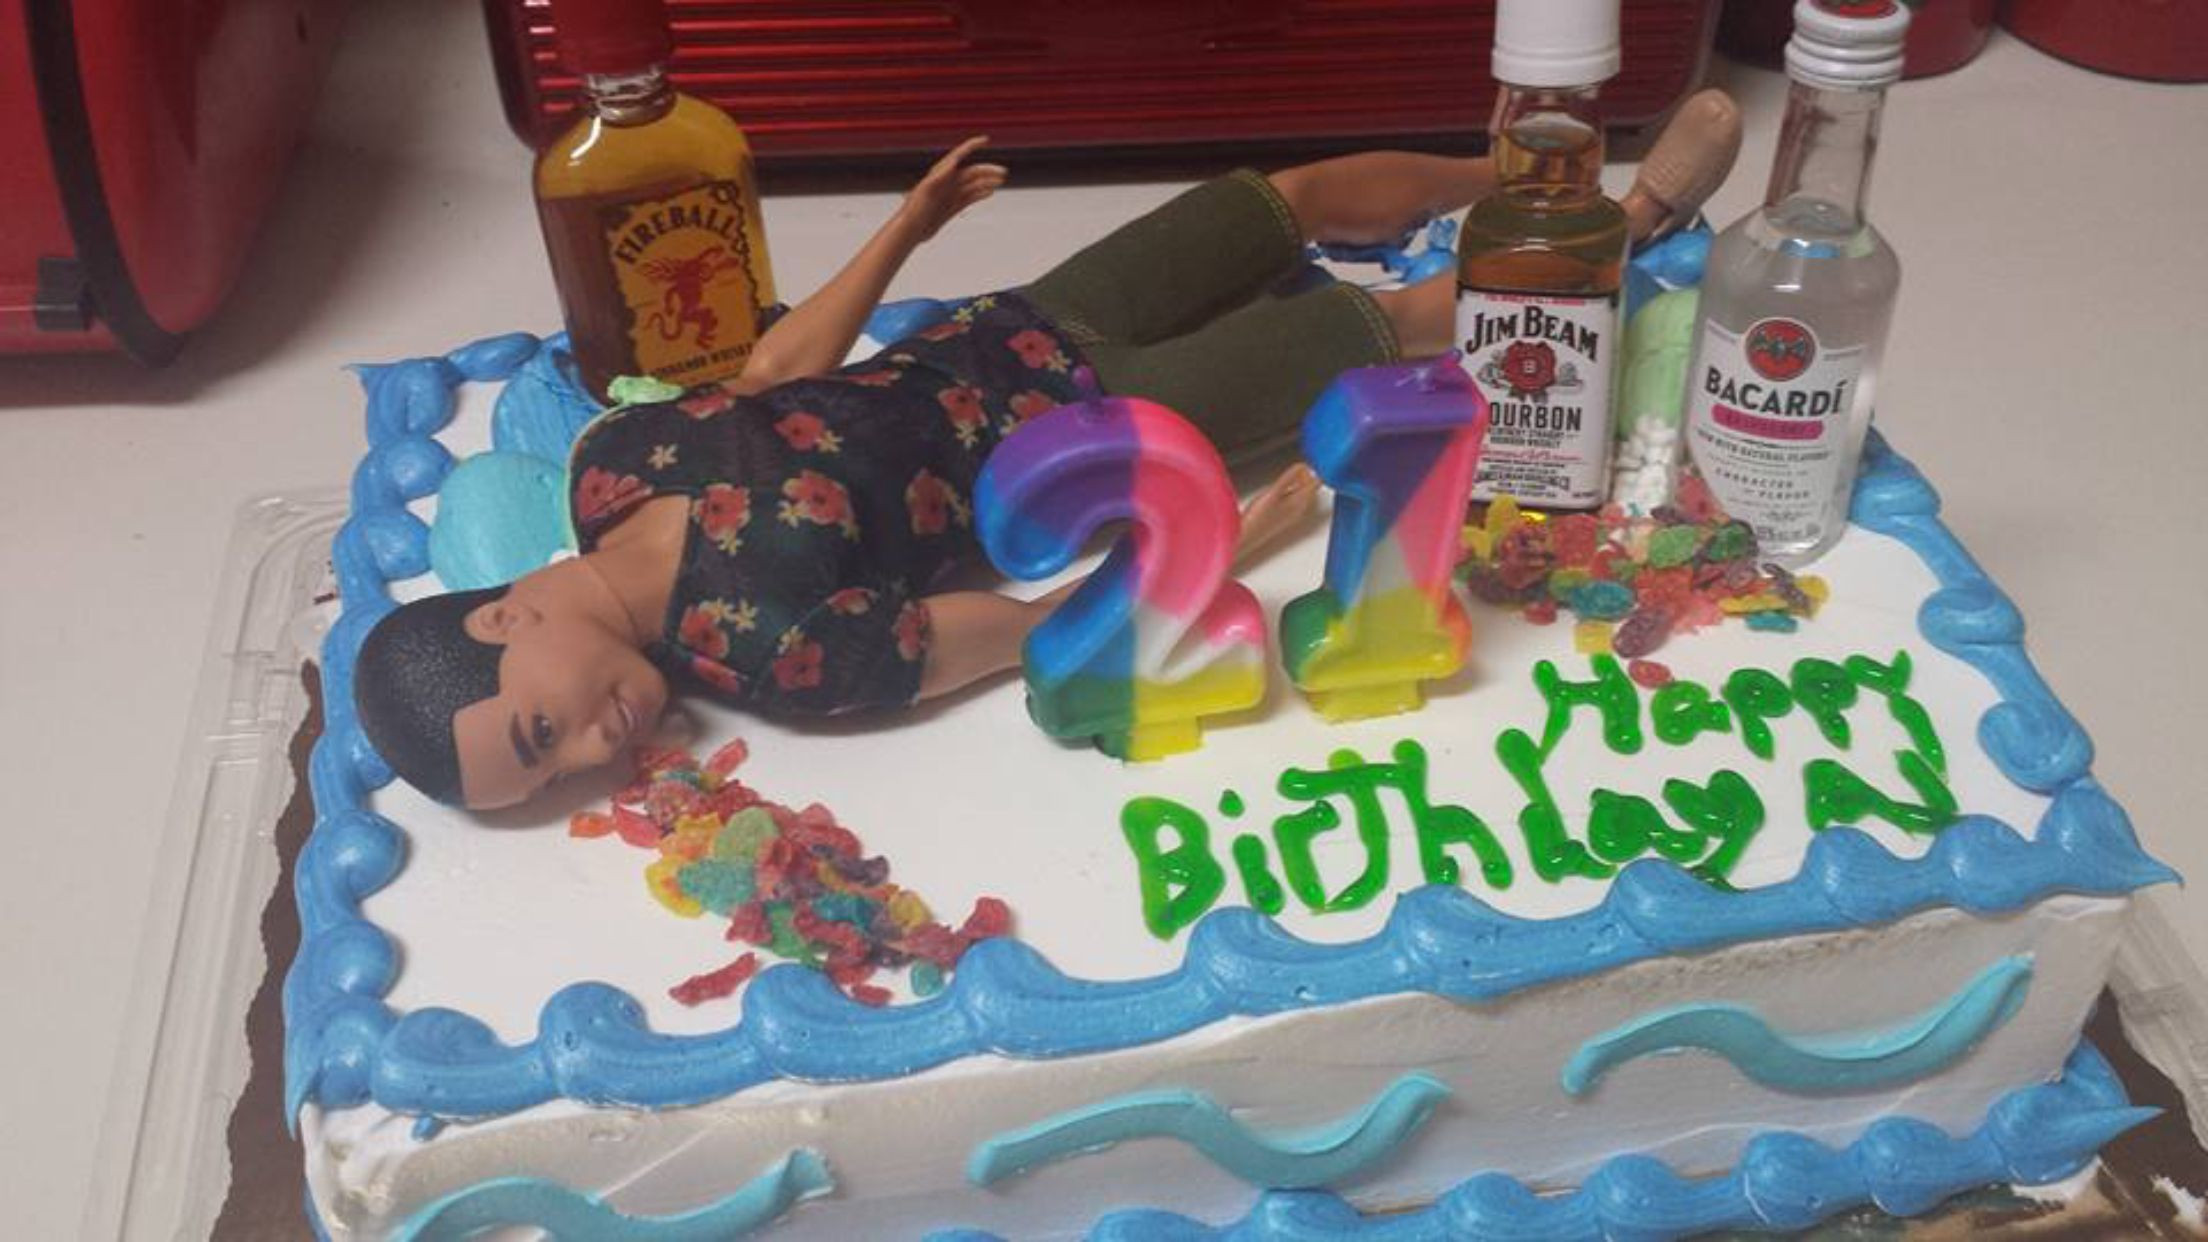 19Th Birthday Gift Ideas For Guys
 Guys 21st birthday cake … b s birthday